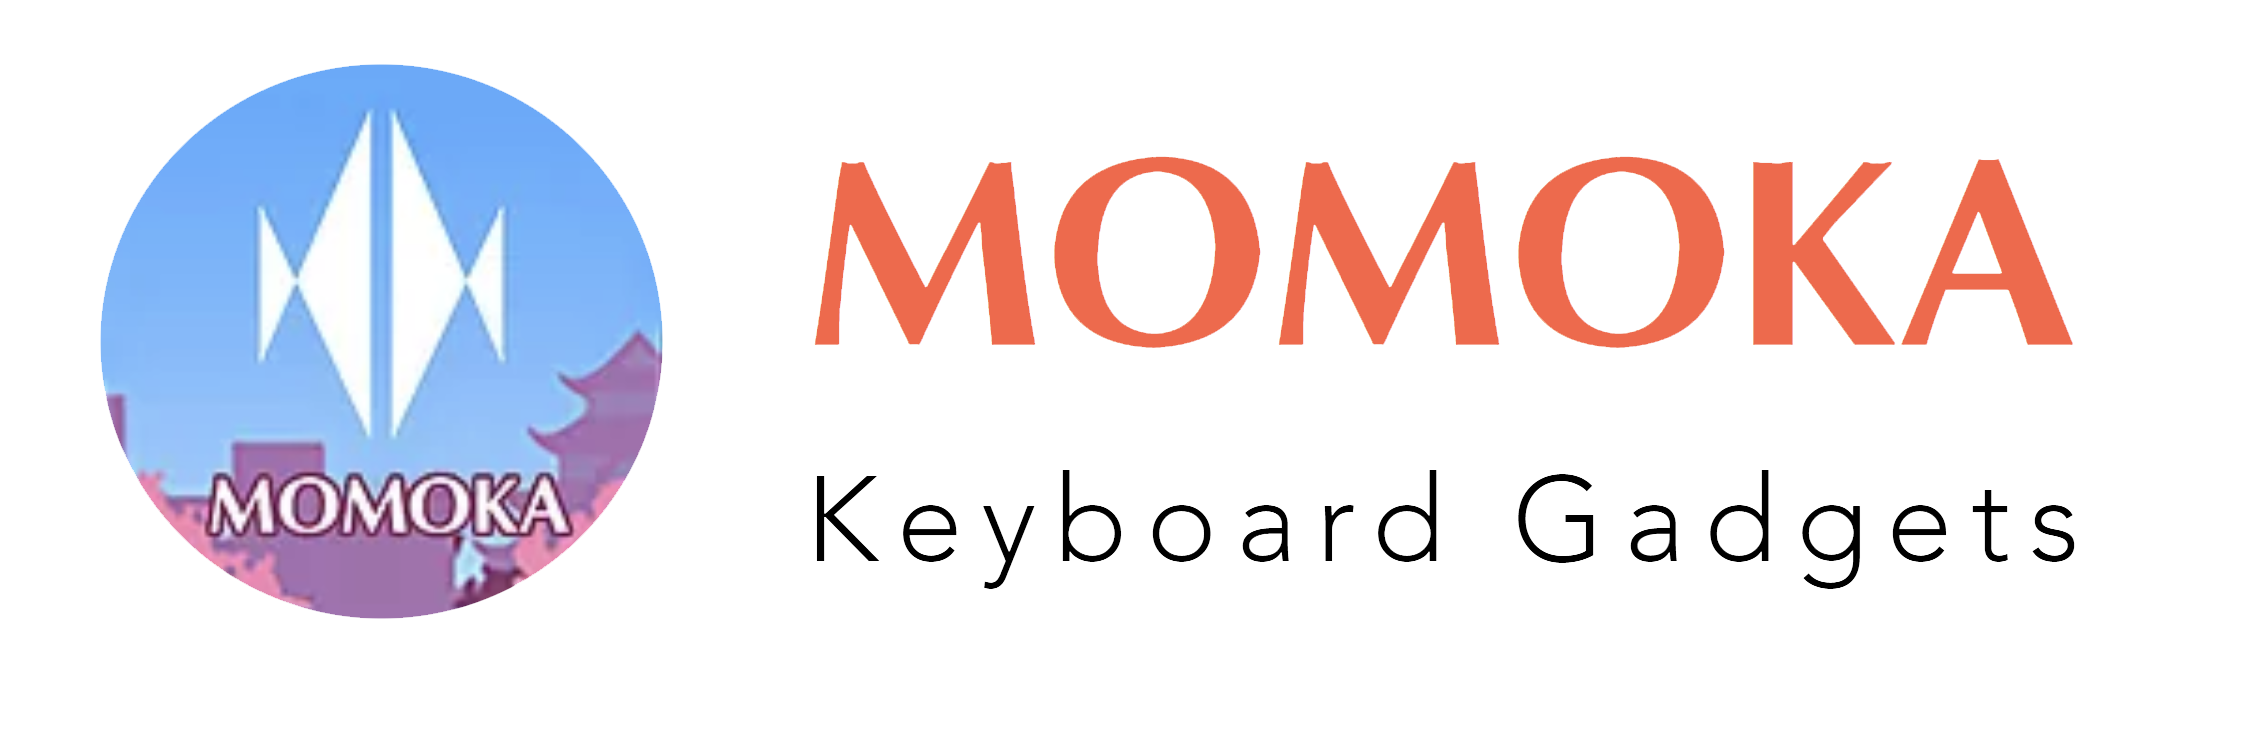 MOMOKA Store | Keyboards and Gadgets